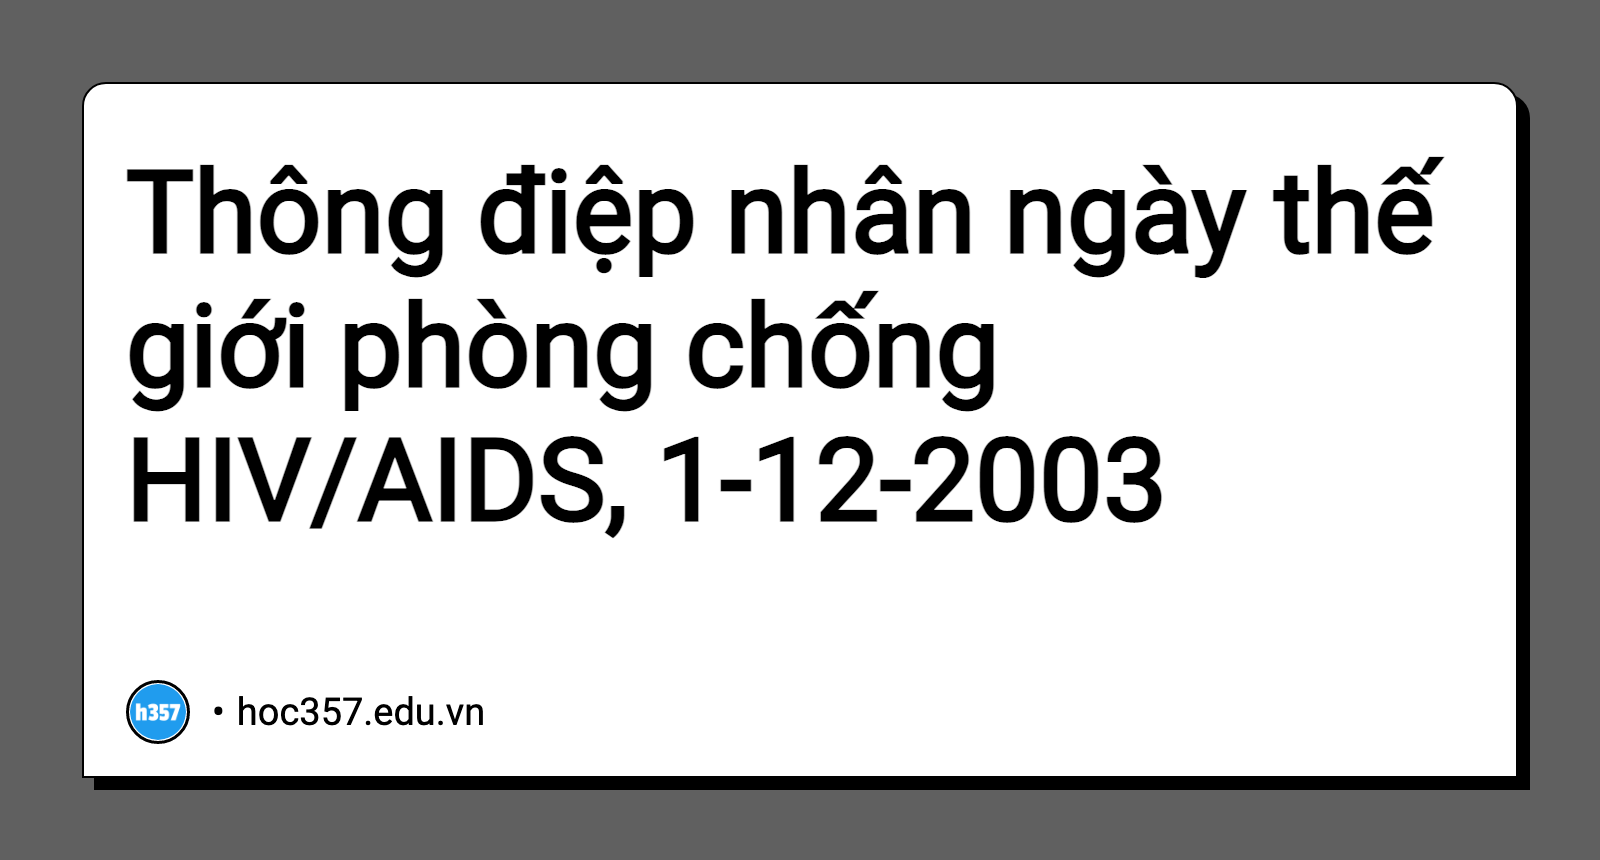 Hình minh họa Thông điệp nhân ngày thế giới phòng chống HIV/AIDS, 1-12-2003